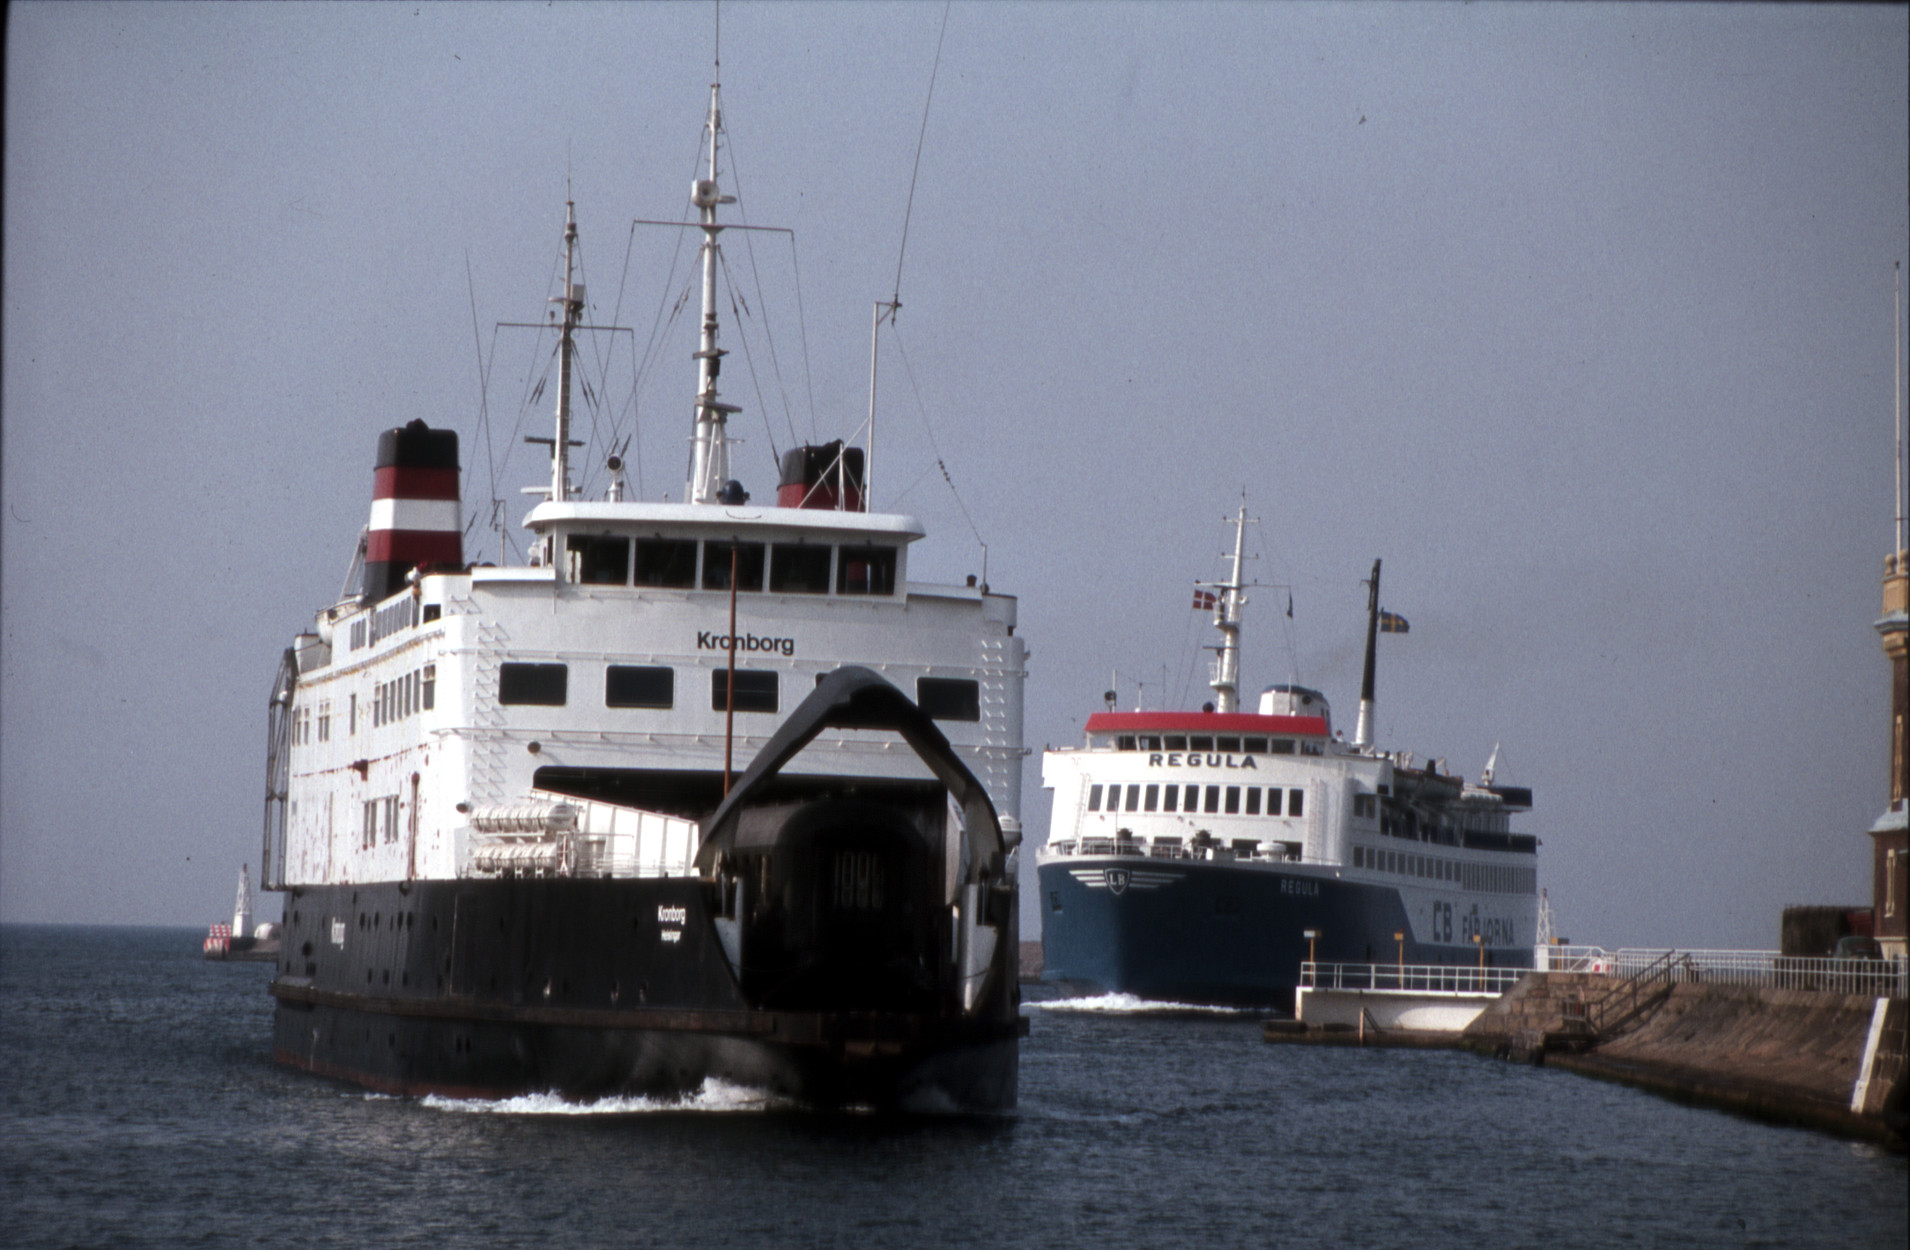 DSB-färjan Kronborg och LB-färjan Regula på ingång i Helsingborg 6.7.1981